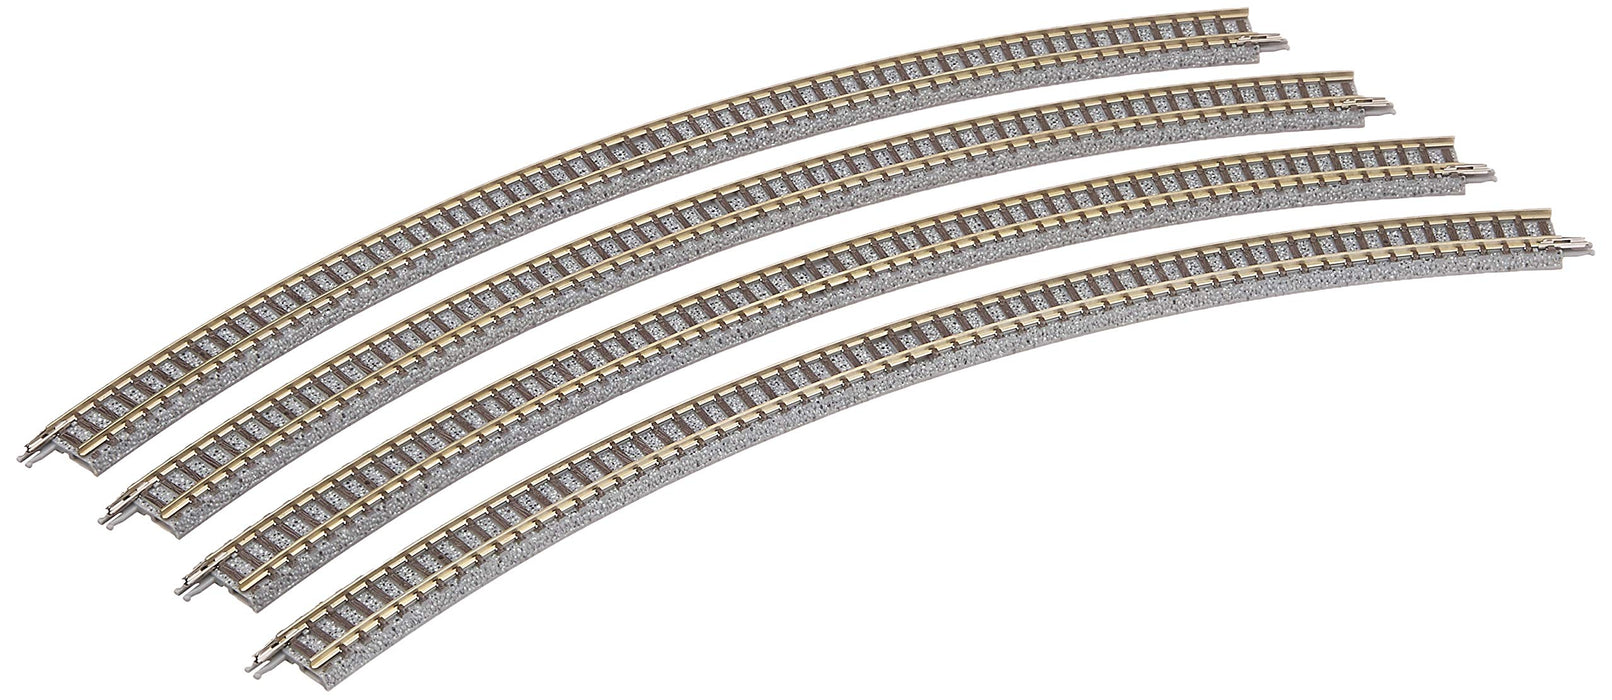 Tomytec Tomix N Gauge Curved Rail C391-45 Ensemble de 4 1858 Fournitures de modèle ferroviaire